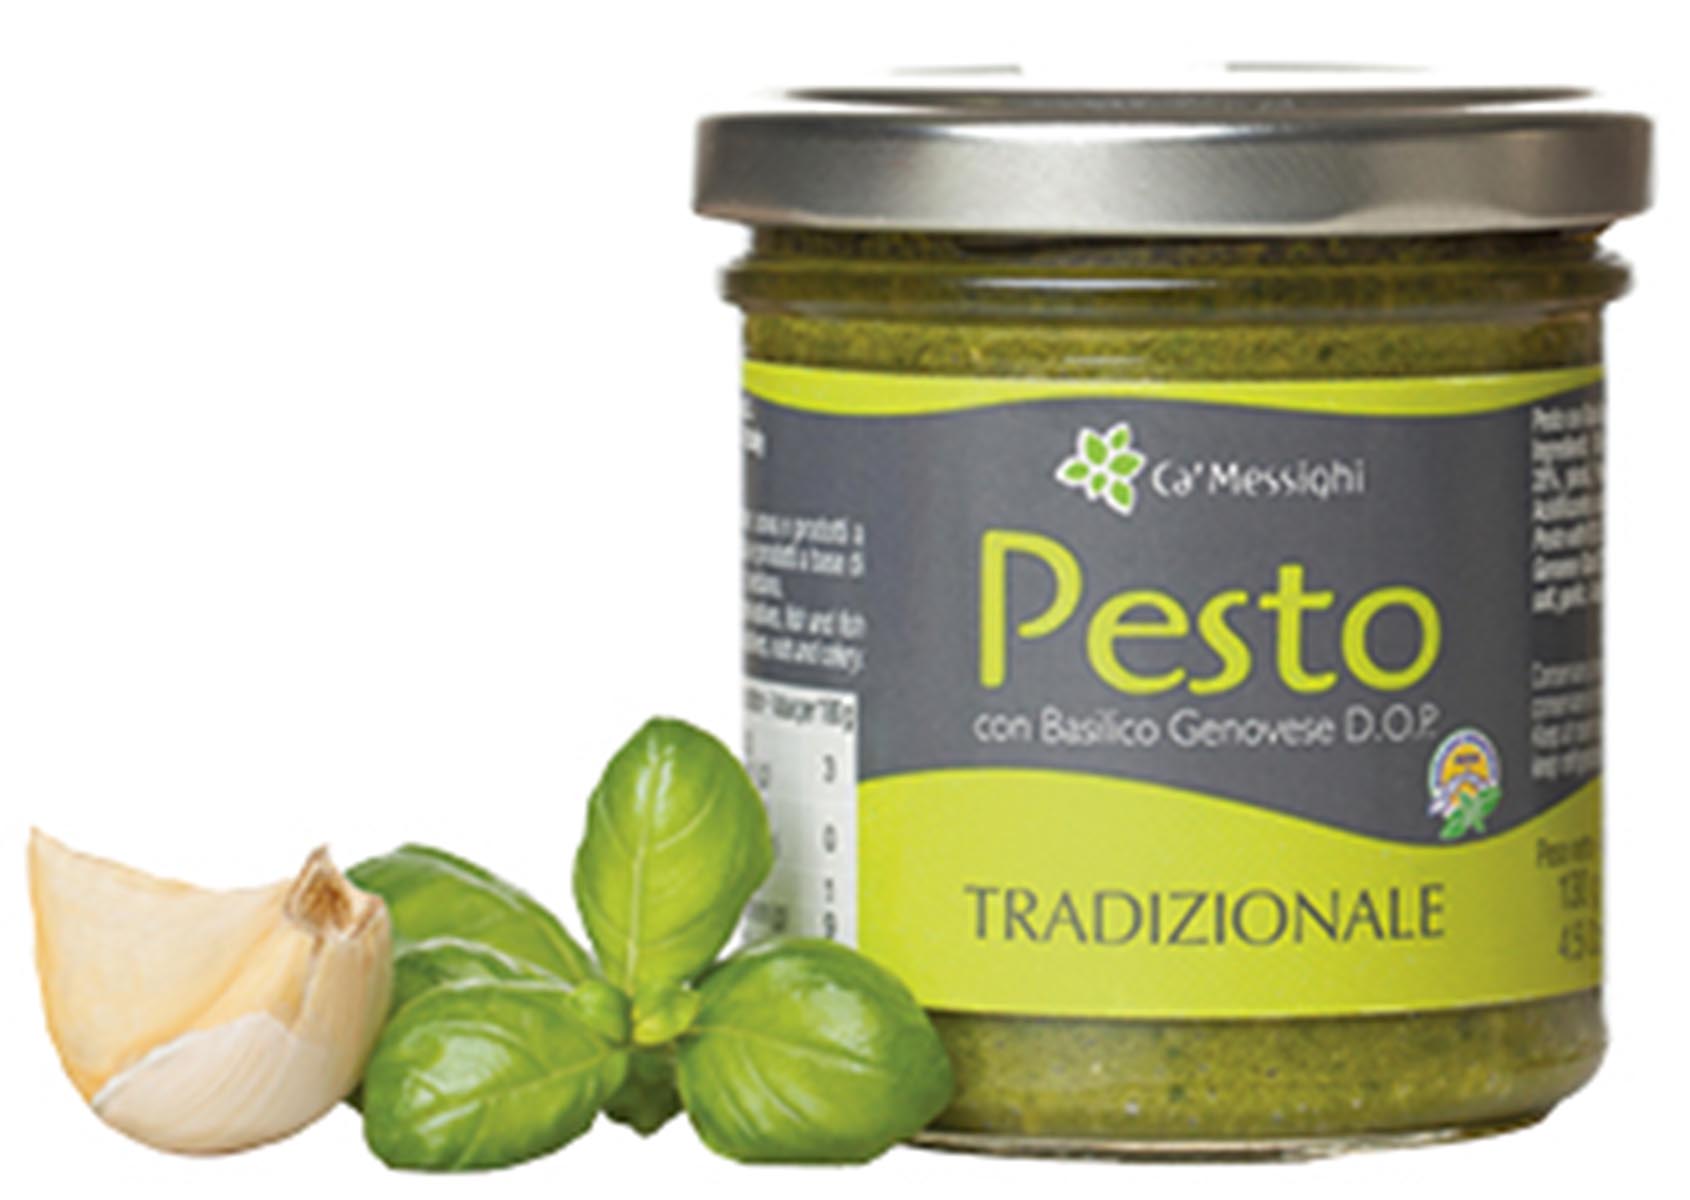 Pesto con Basilico Genovese D.O.P.